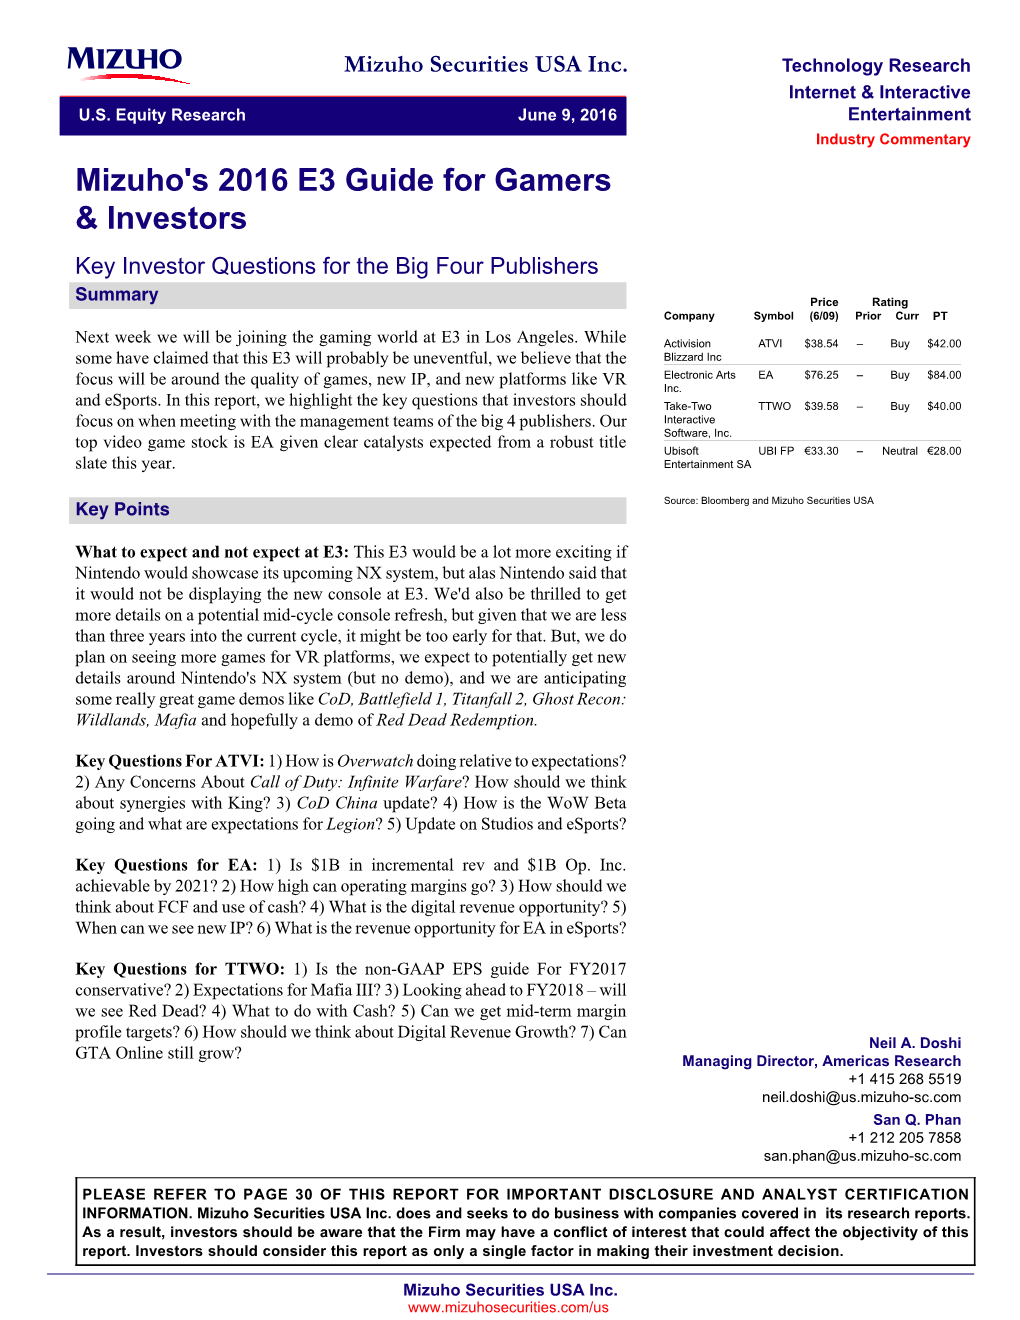 Mizuho's 2016 E3 Guide for Gamers & Investors